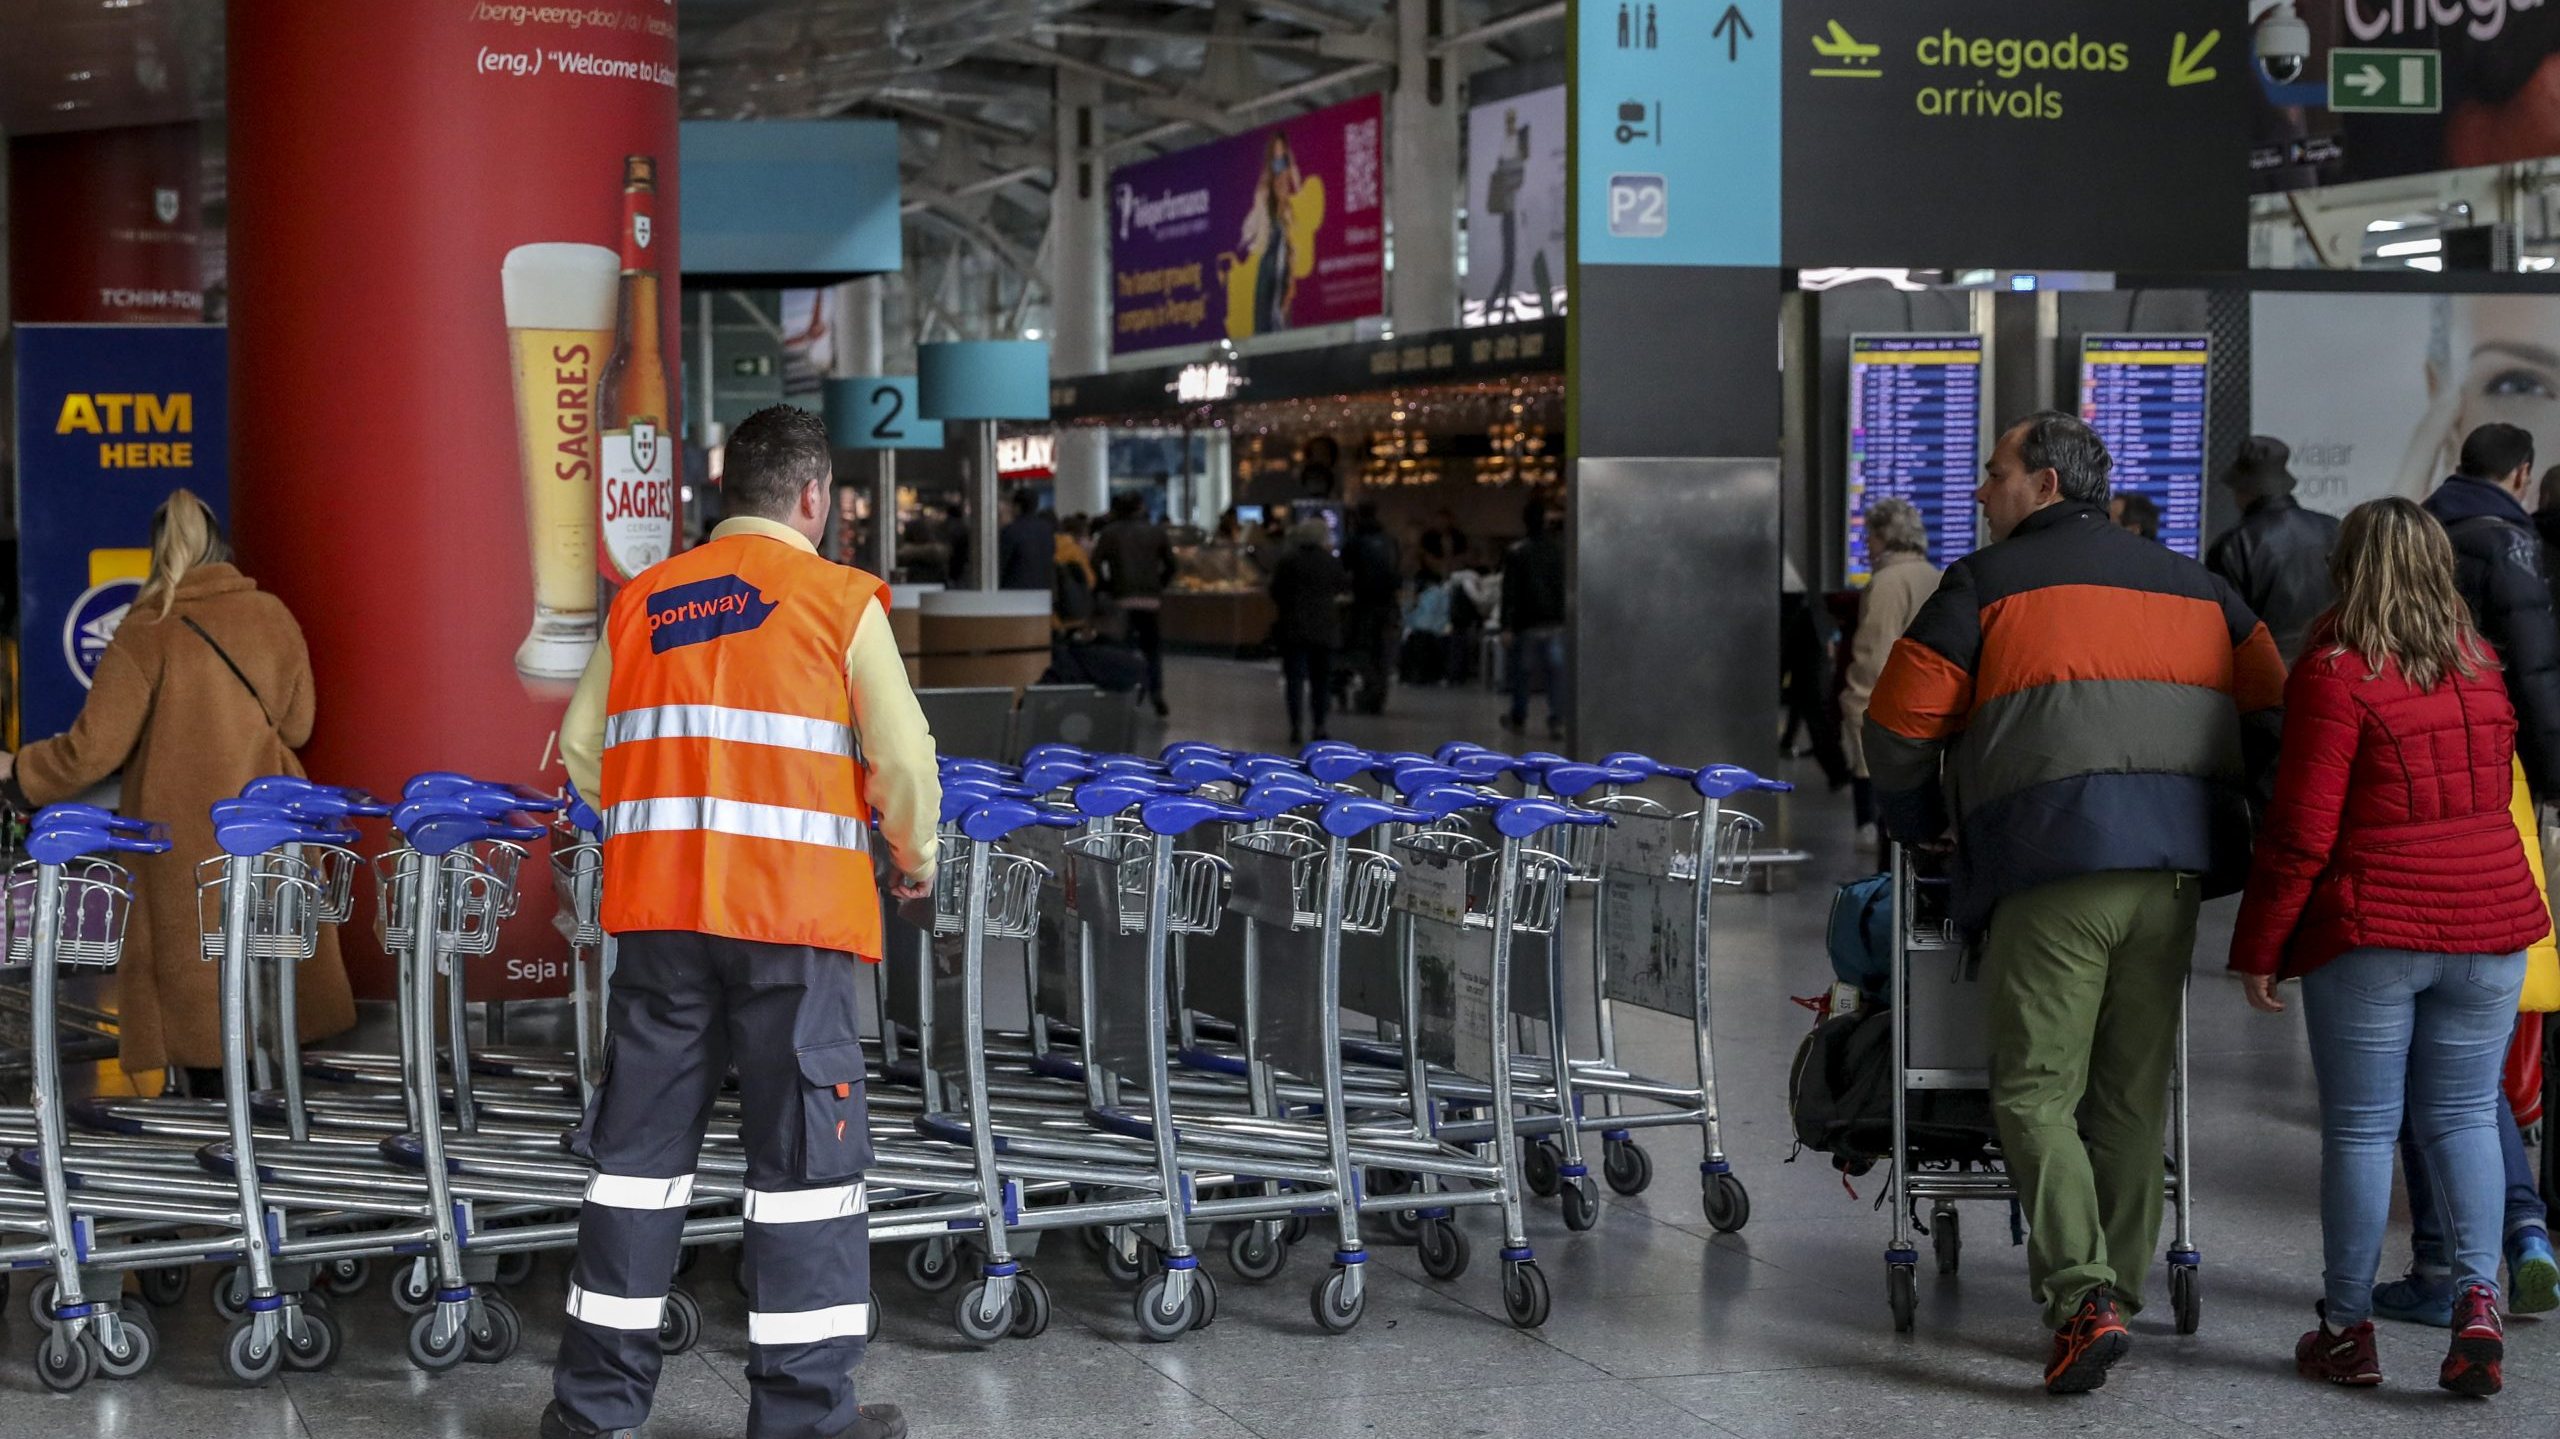 Trabalhador da Portway em serviço no Aeroporto de Lisboa